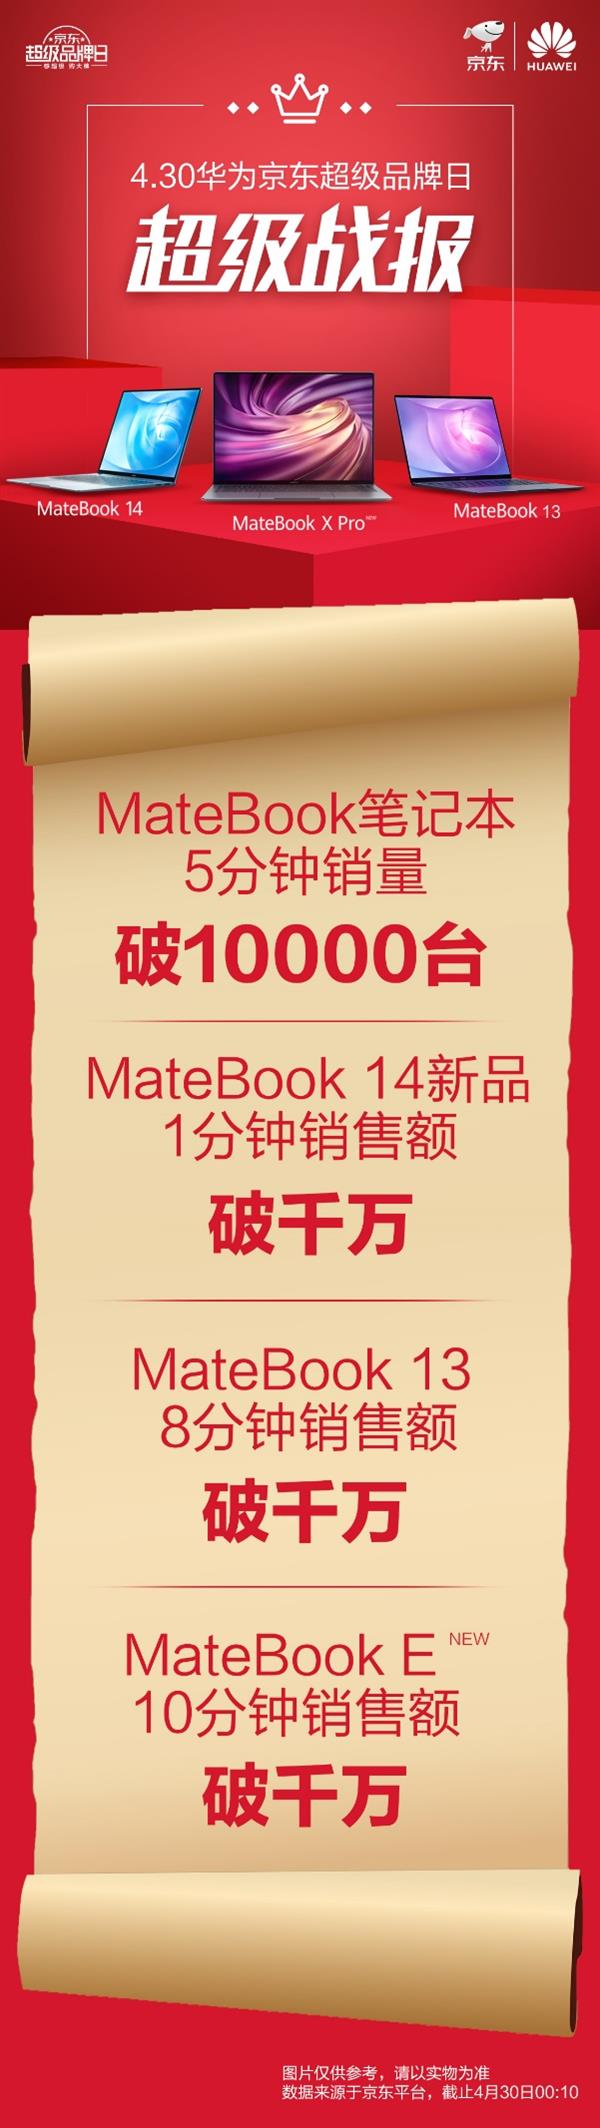 华为Matebook 14笔记本上市 1分钟销量破千万台